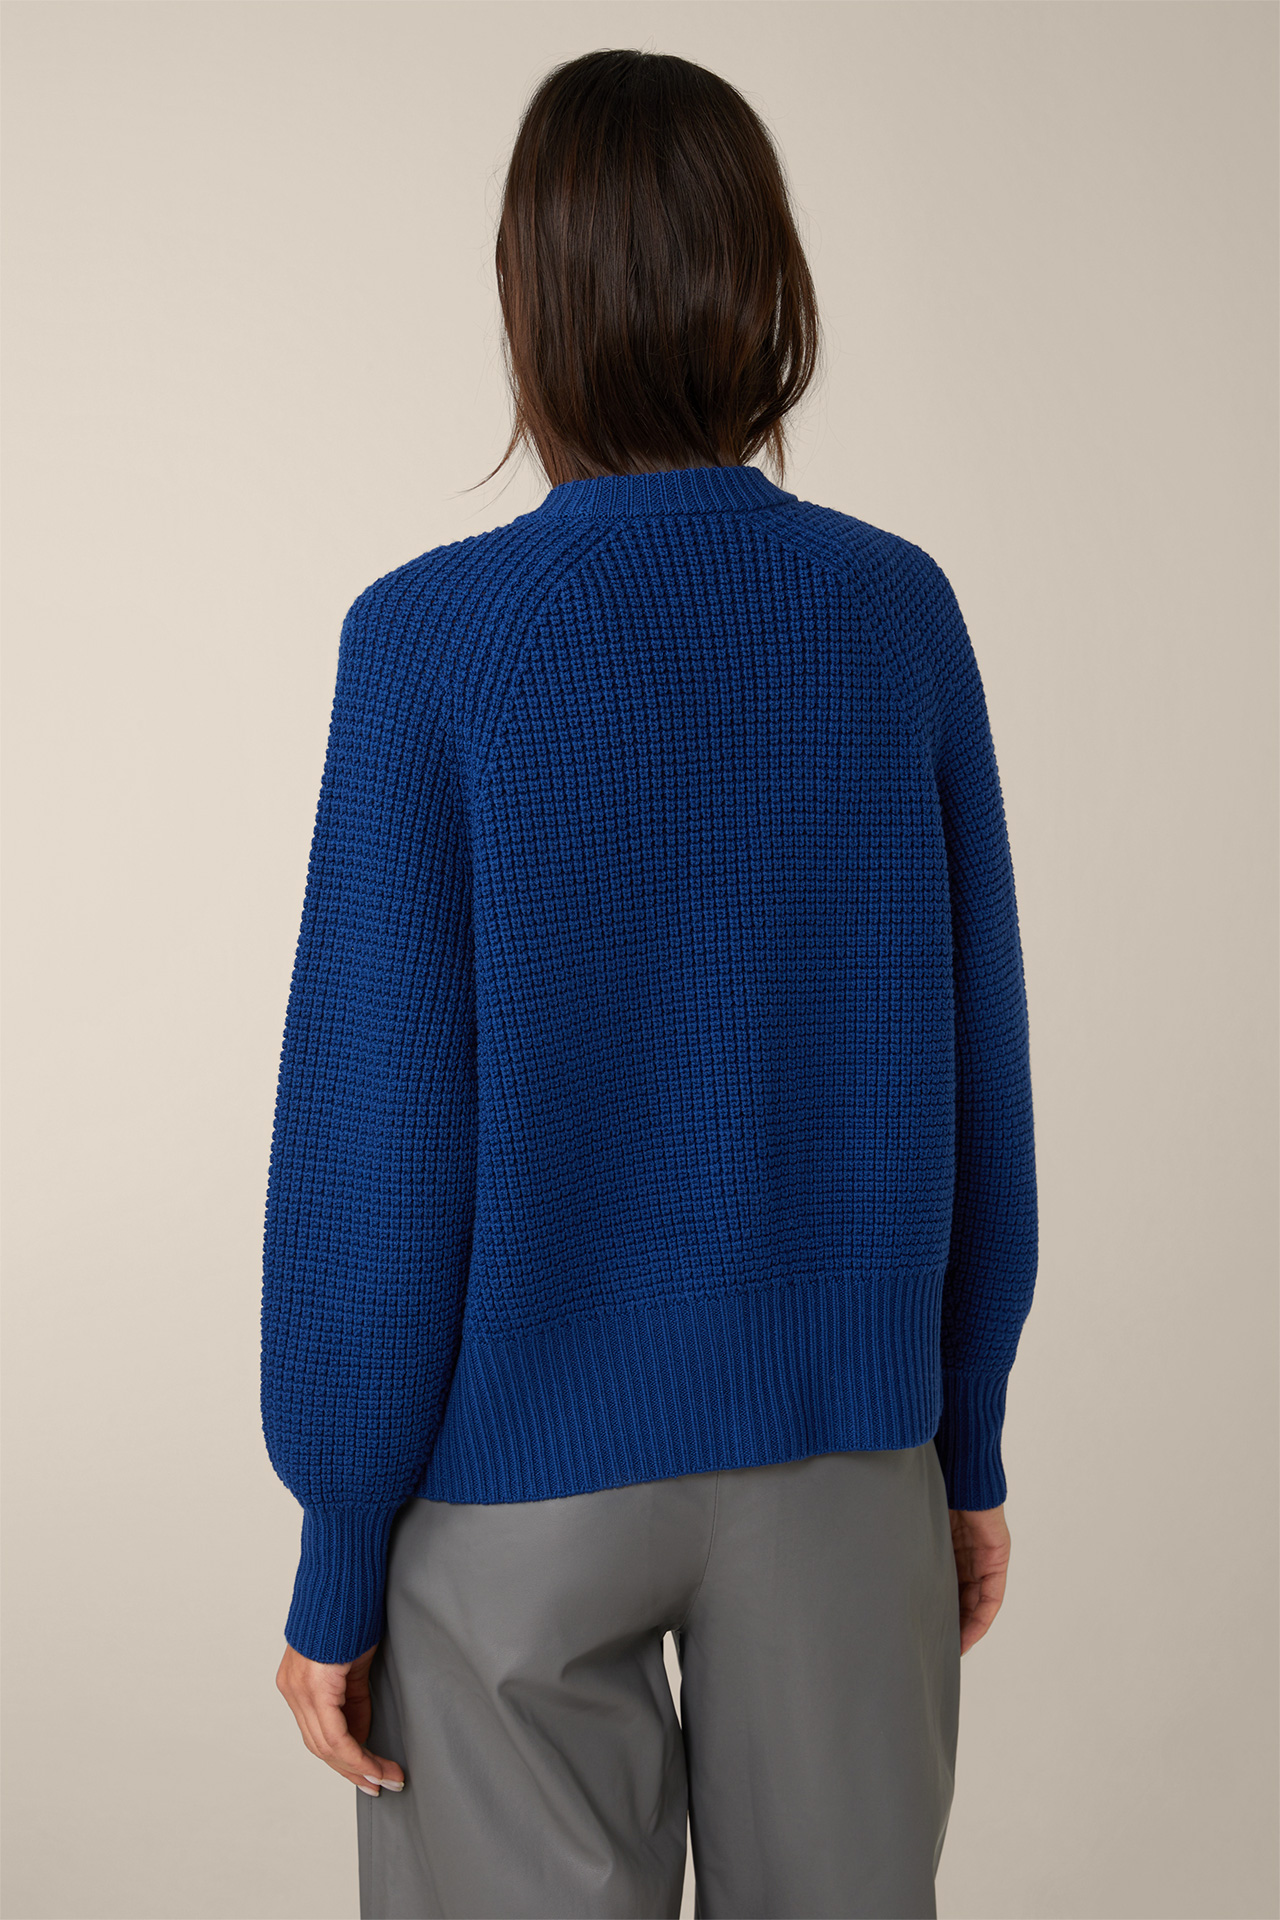 Cardigan en tricot de laine mérinos, en bleu